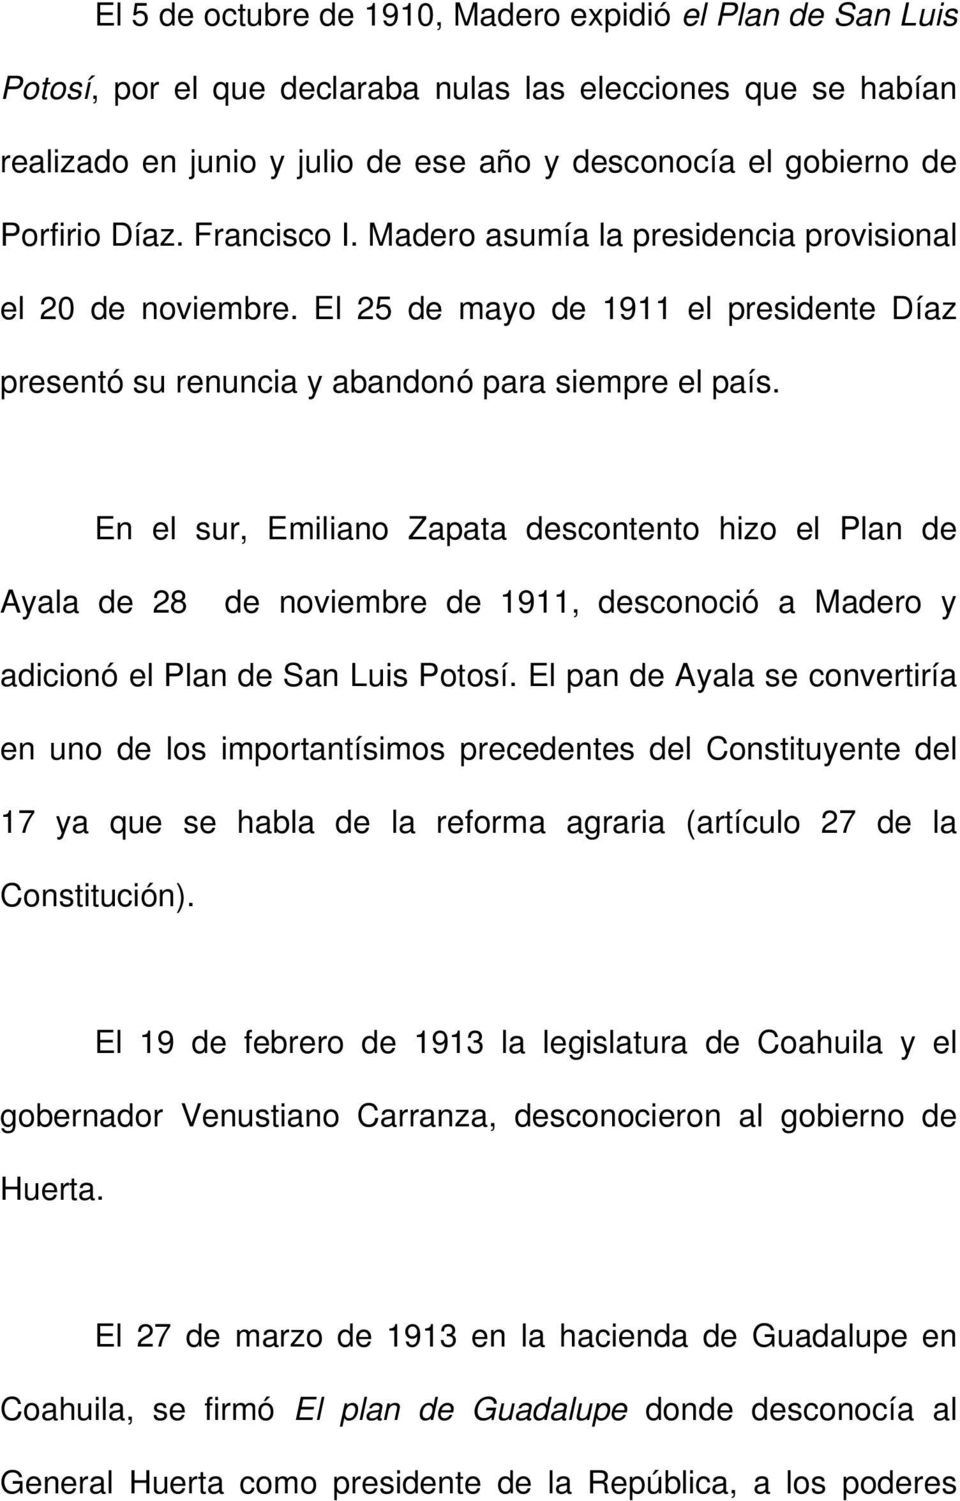 En el sur, Emiliano Zapata descontento hizo el Plan de Ayala de 28 de noviembre de 1911, desconoció a Madero y adicionó el Plan de San Luis Potosí.